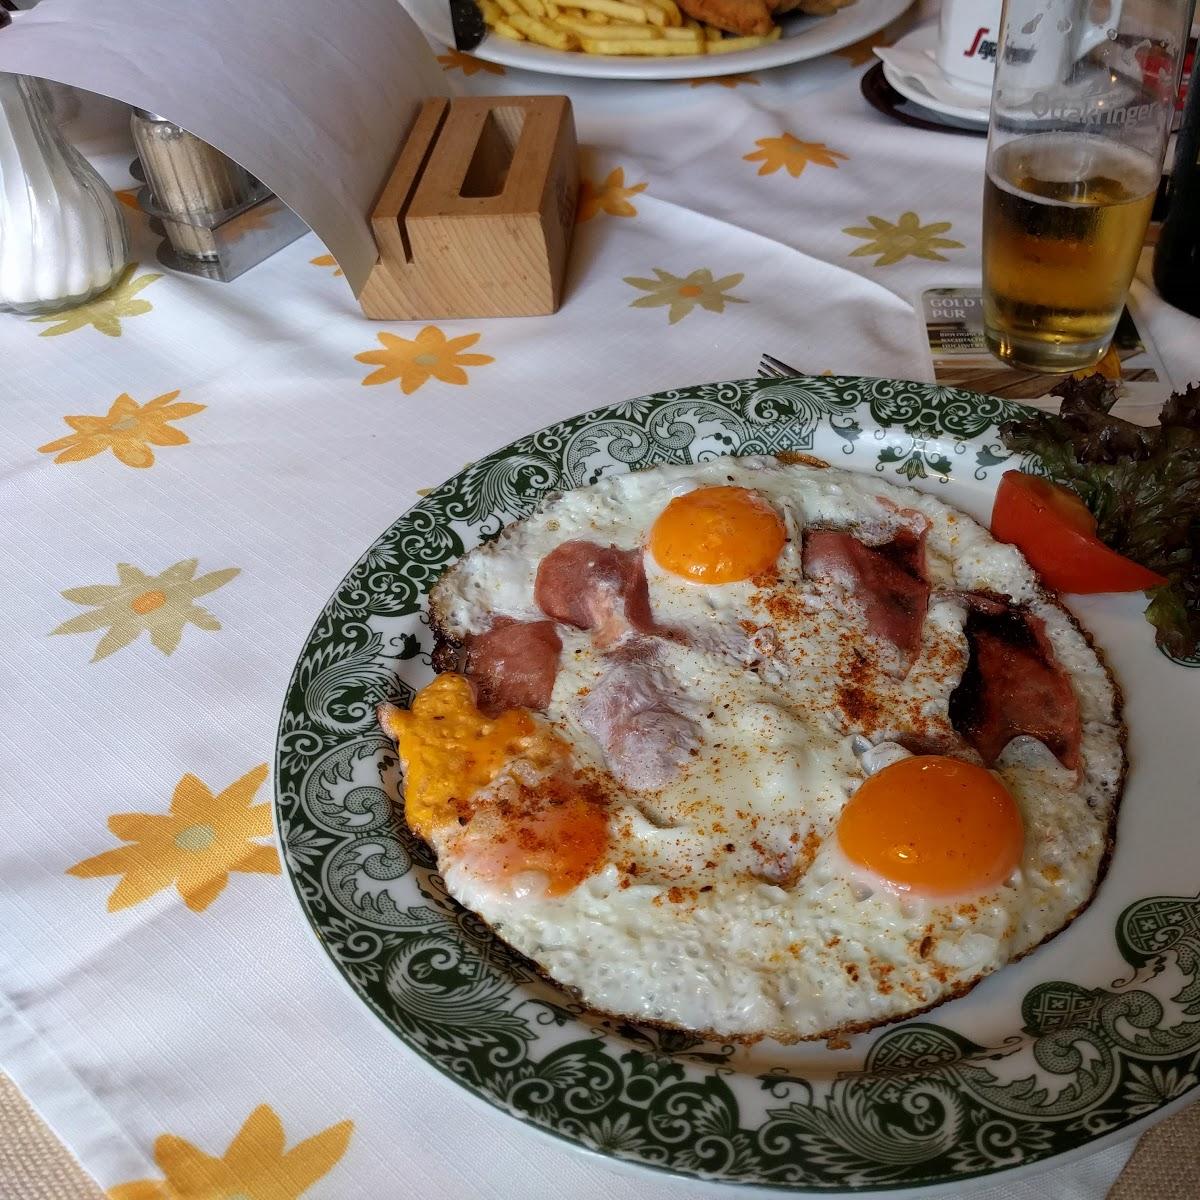 Restaurant "Trixis erhof" in Ravelsbach